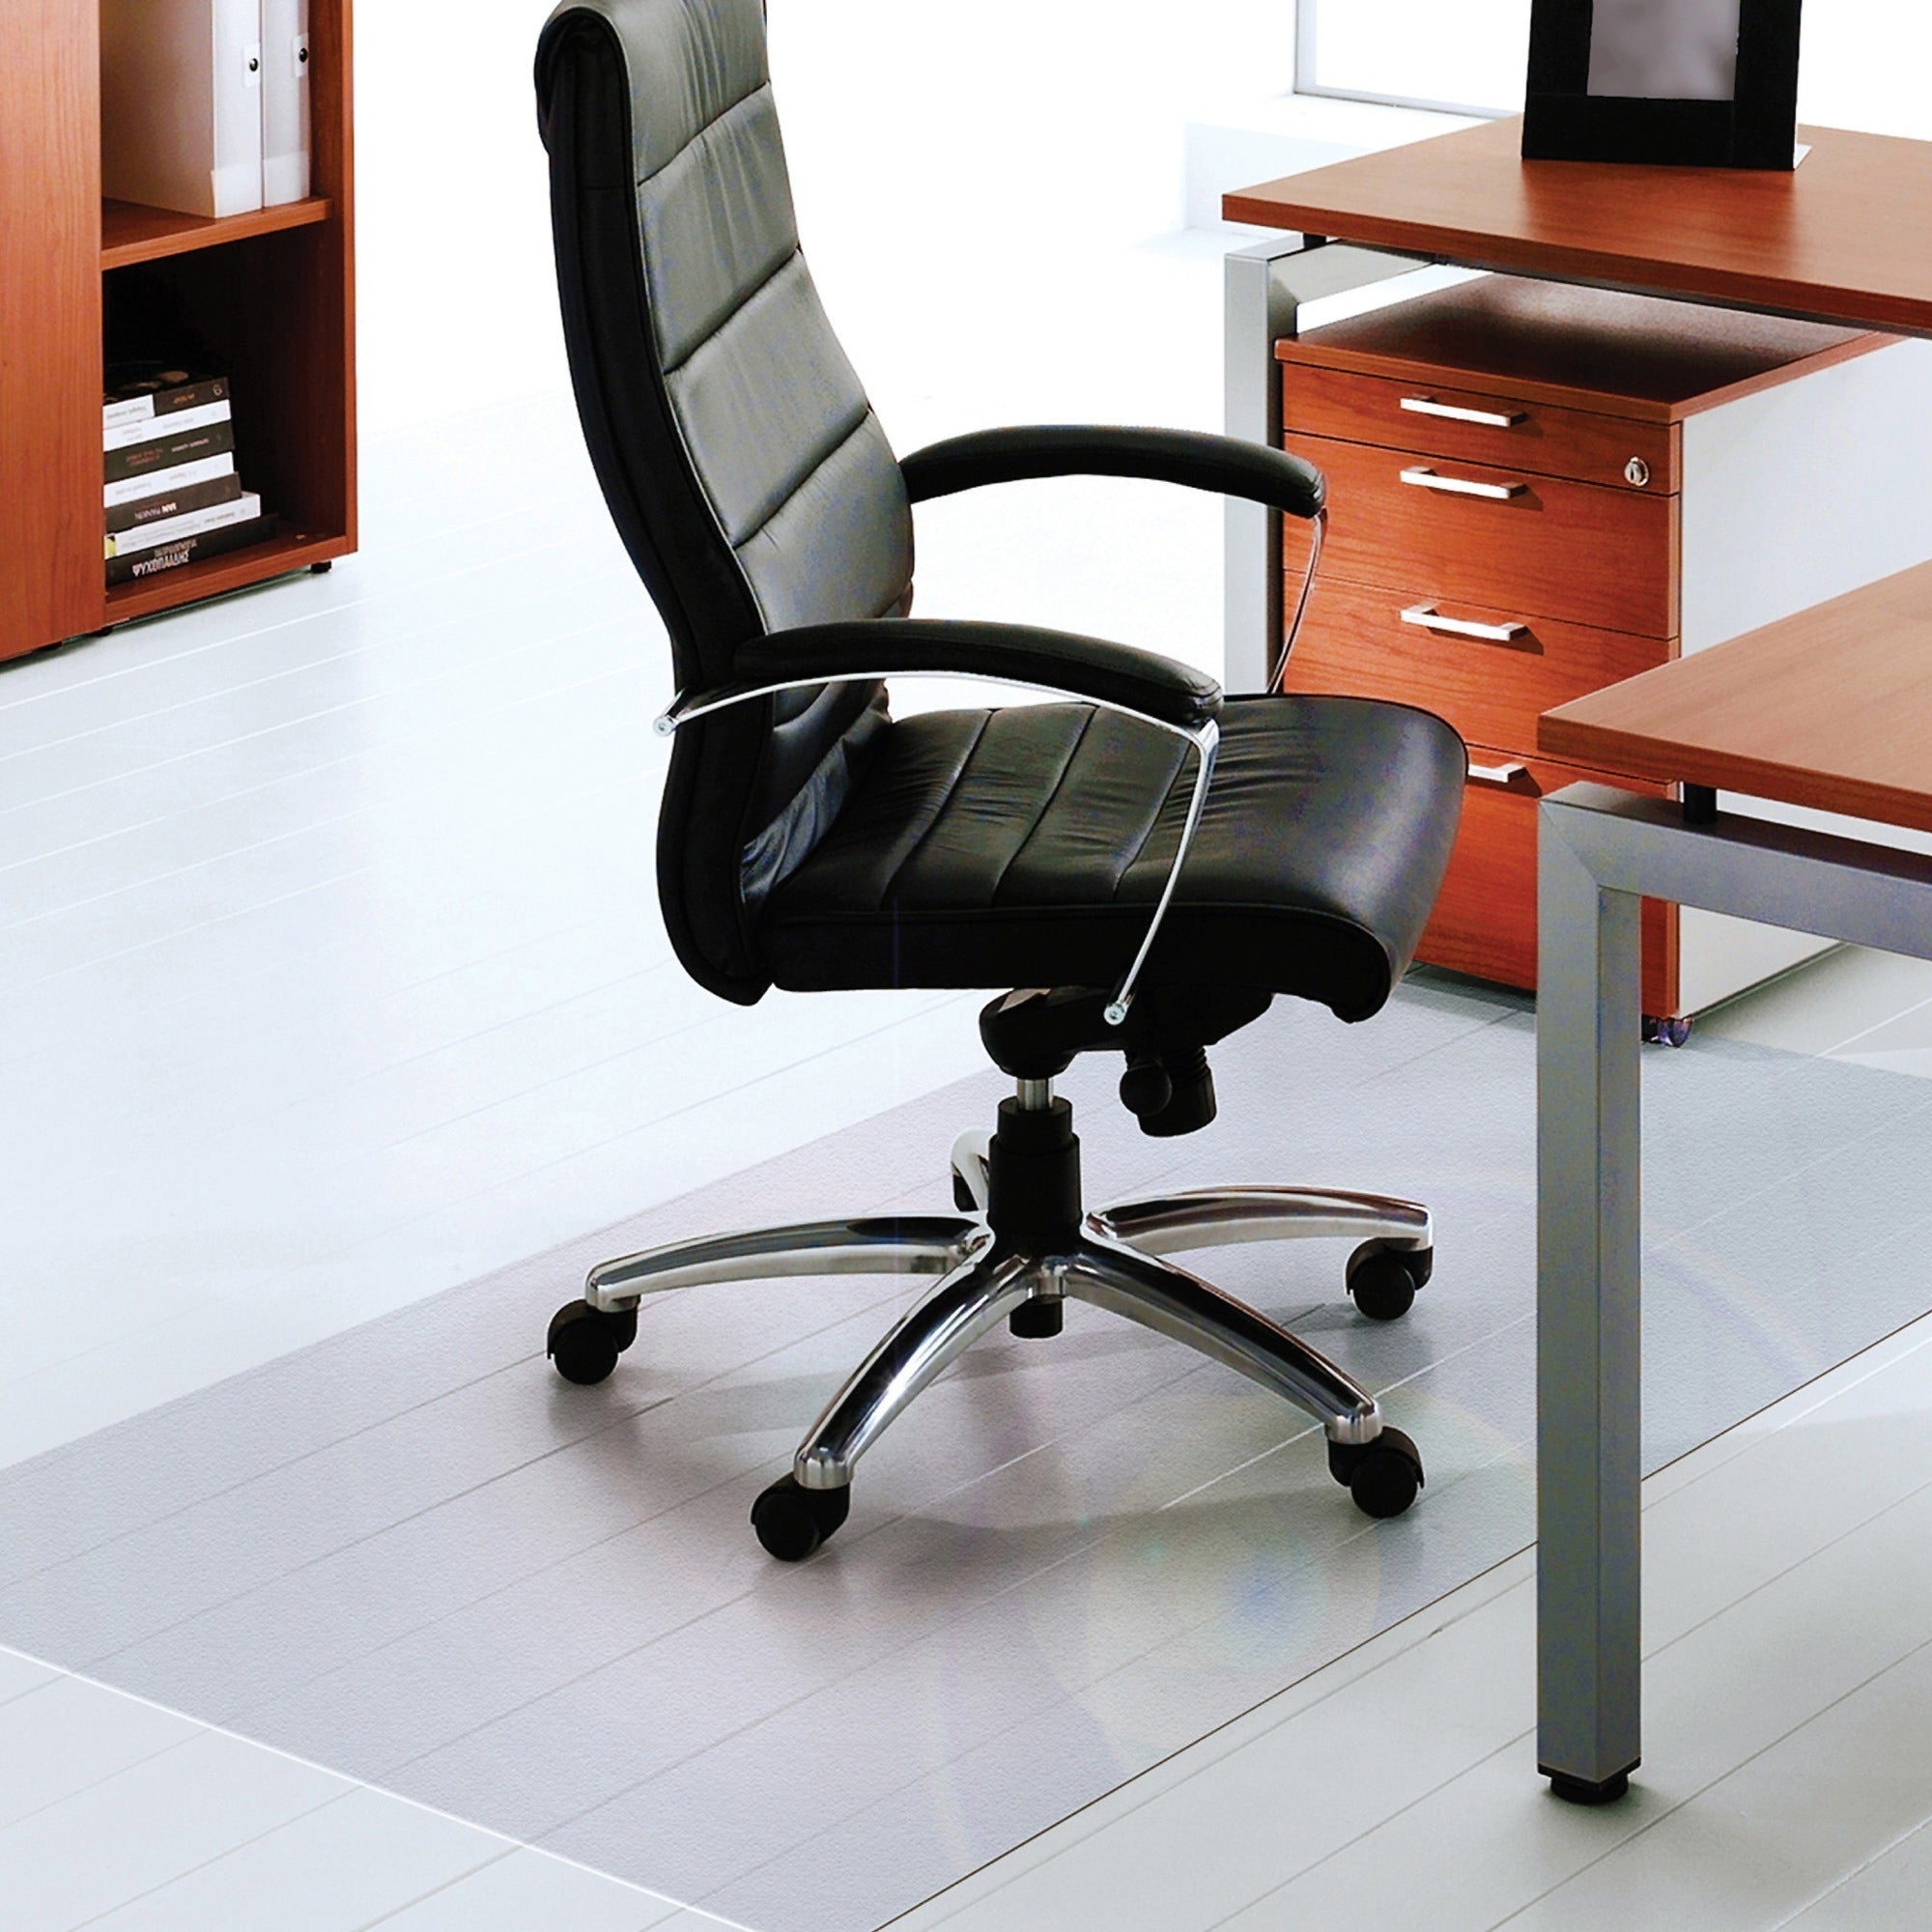 Ultimat XXL Polycarbonate Rectangular Chair Mat for Hard Floors - 60" x 118" - Clear XXL Rectangular Polycarbonate Chair Mat for Hard Floor - 118"L x 60"W x 0.075"D - 